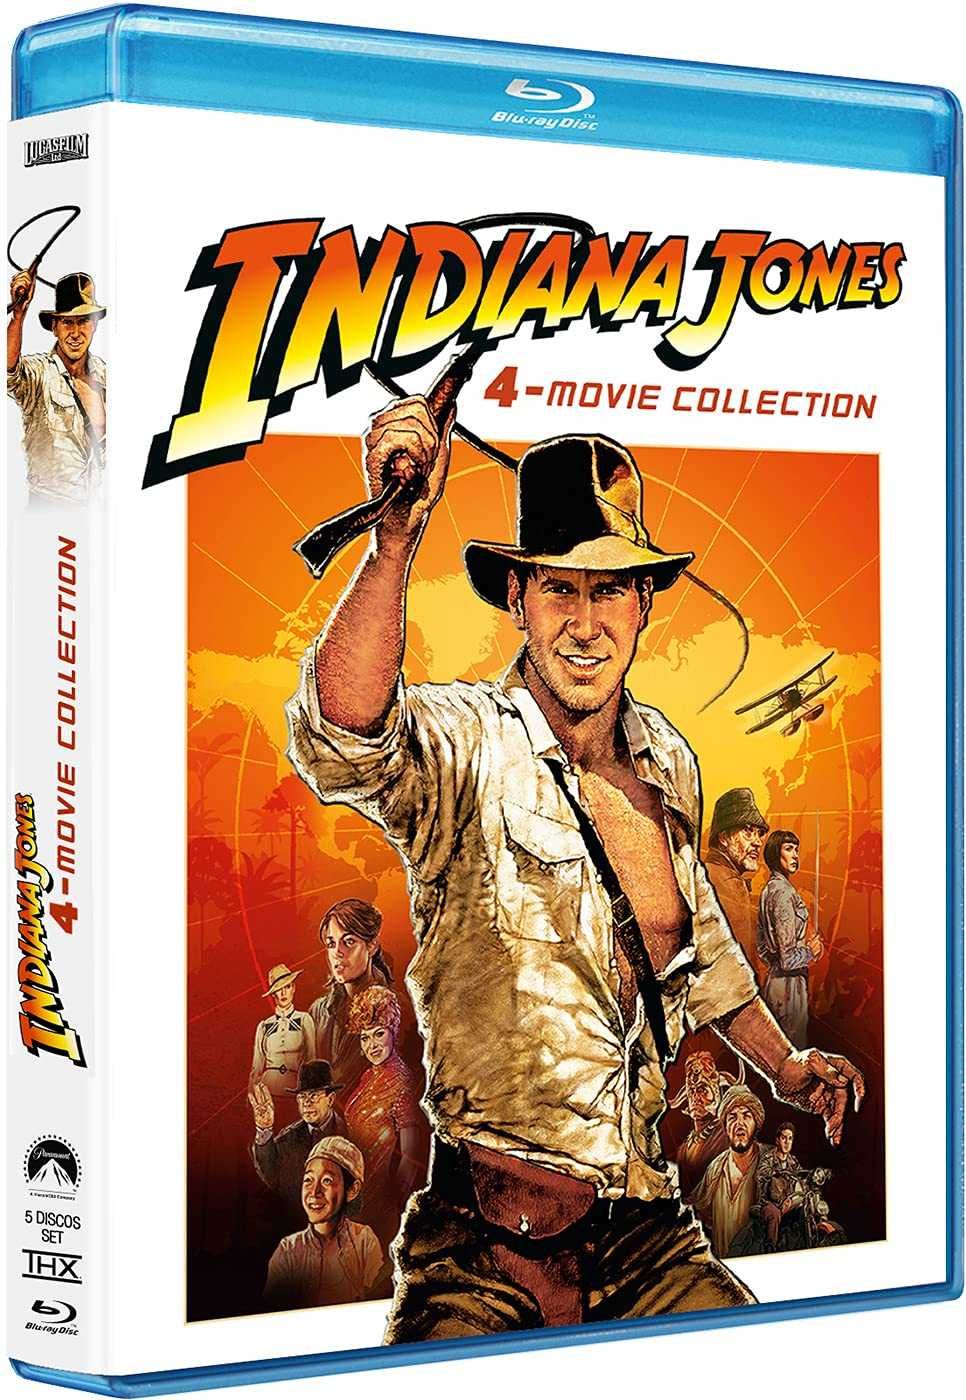 Indiana Jones colecção 4 filmes (de 1 a 4) Blu-ray - NOVO ENVIO GRÁTIS